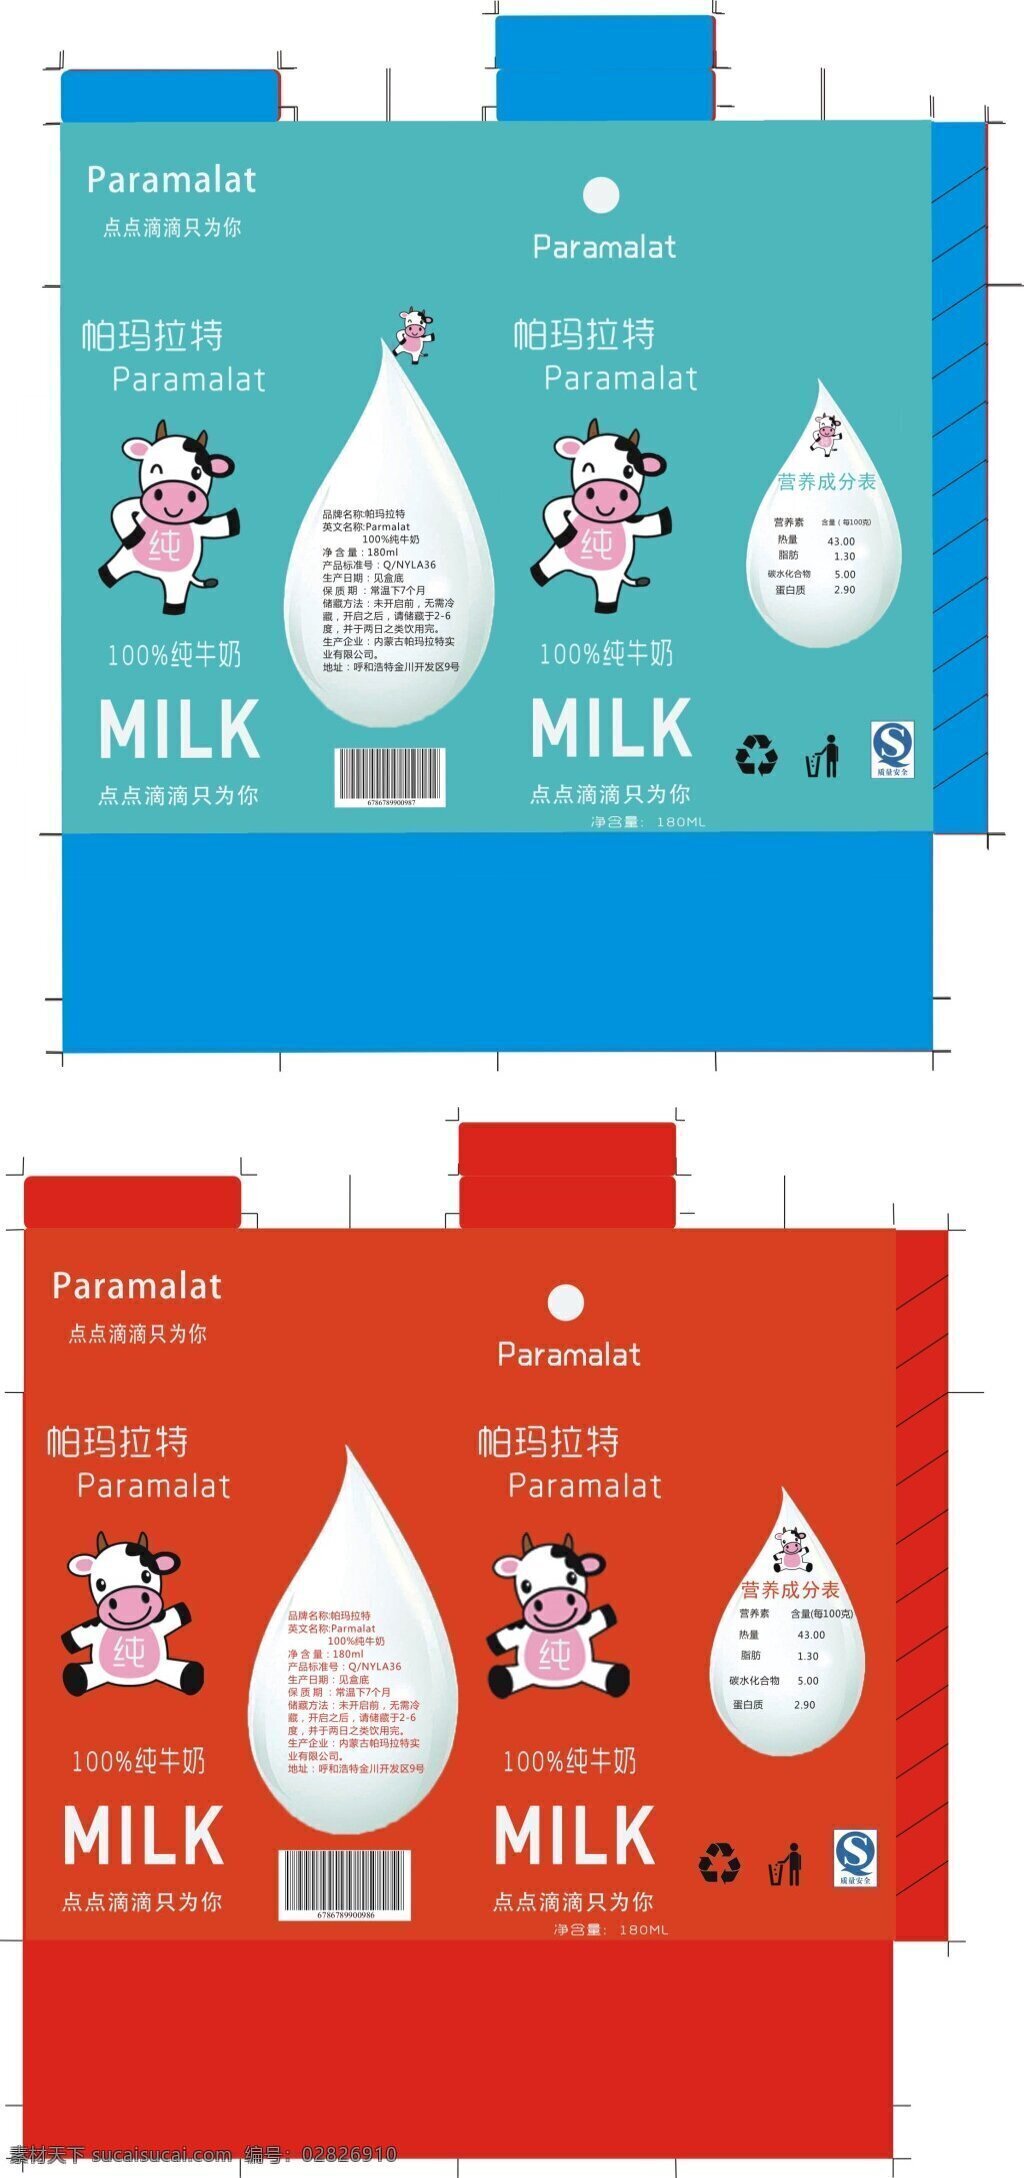 牛奶包装设计 可爱 包装 清晰 图标详细 尺寸供参考 萌萌哒